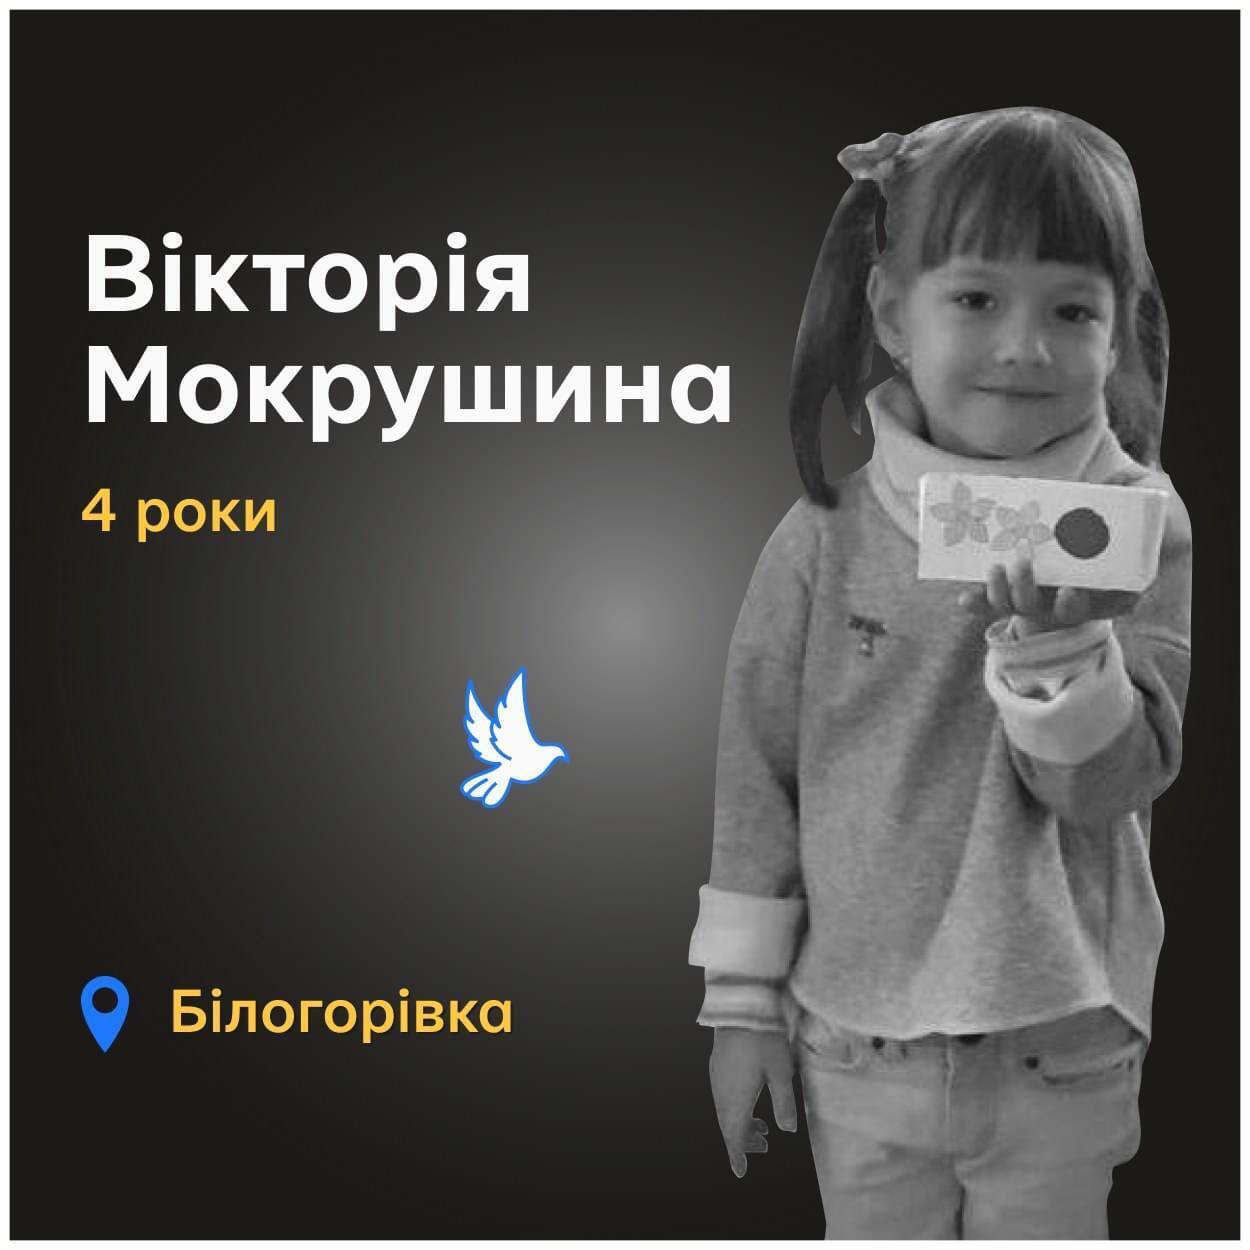 Много улыбалась и радовалась жизни: в сети рассказали о 4-летней девочке, которую вместе с родителями и братиком убила российская бомба